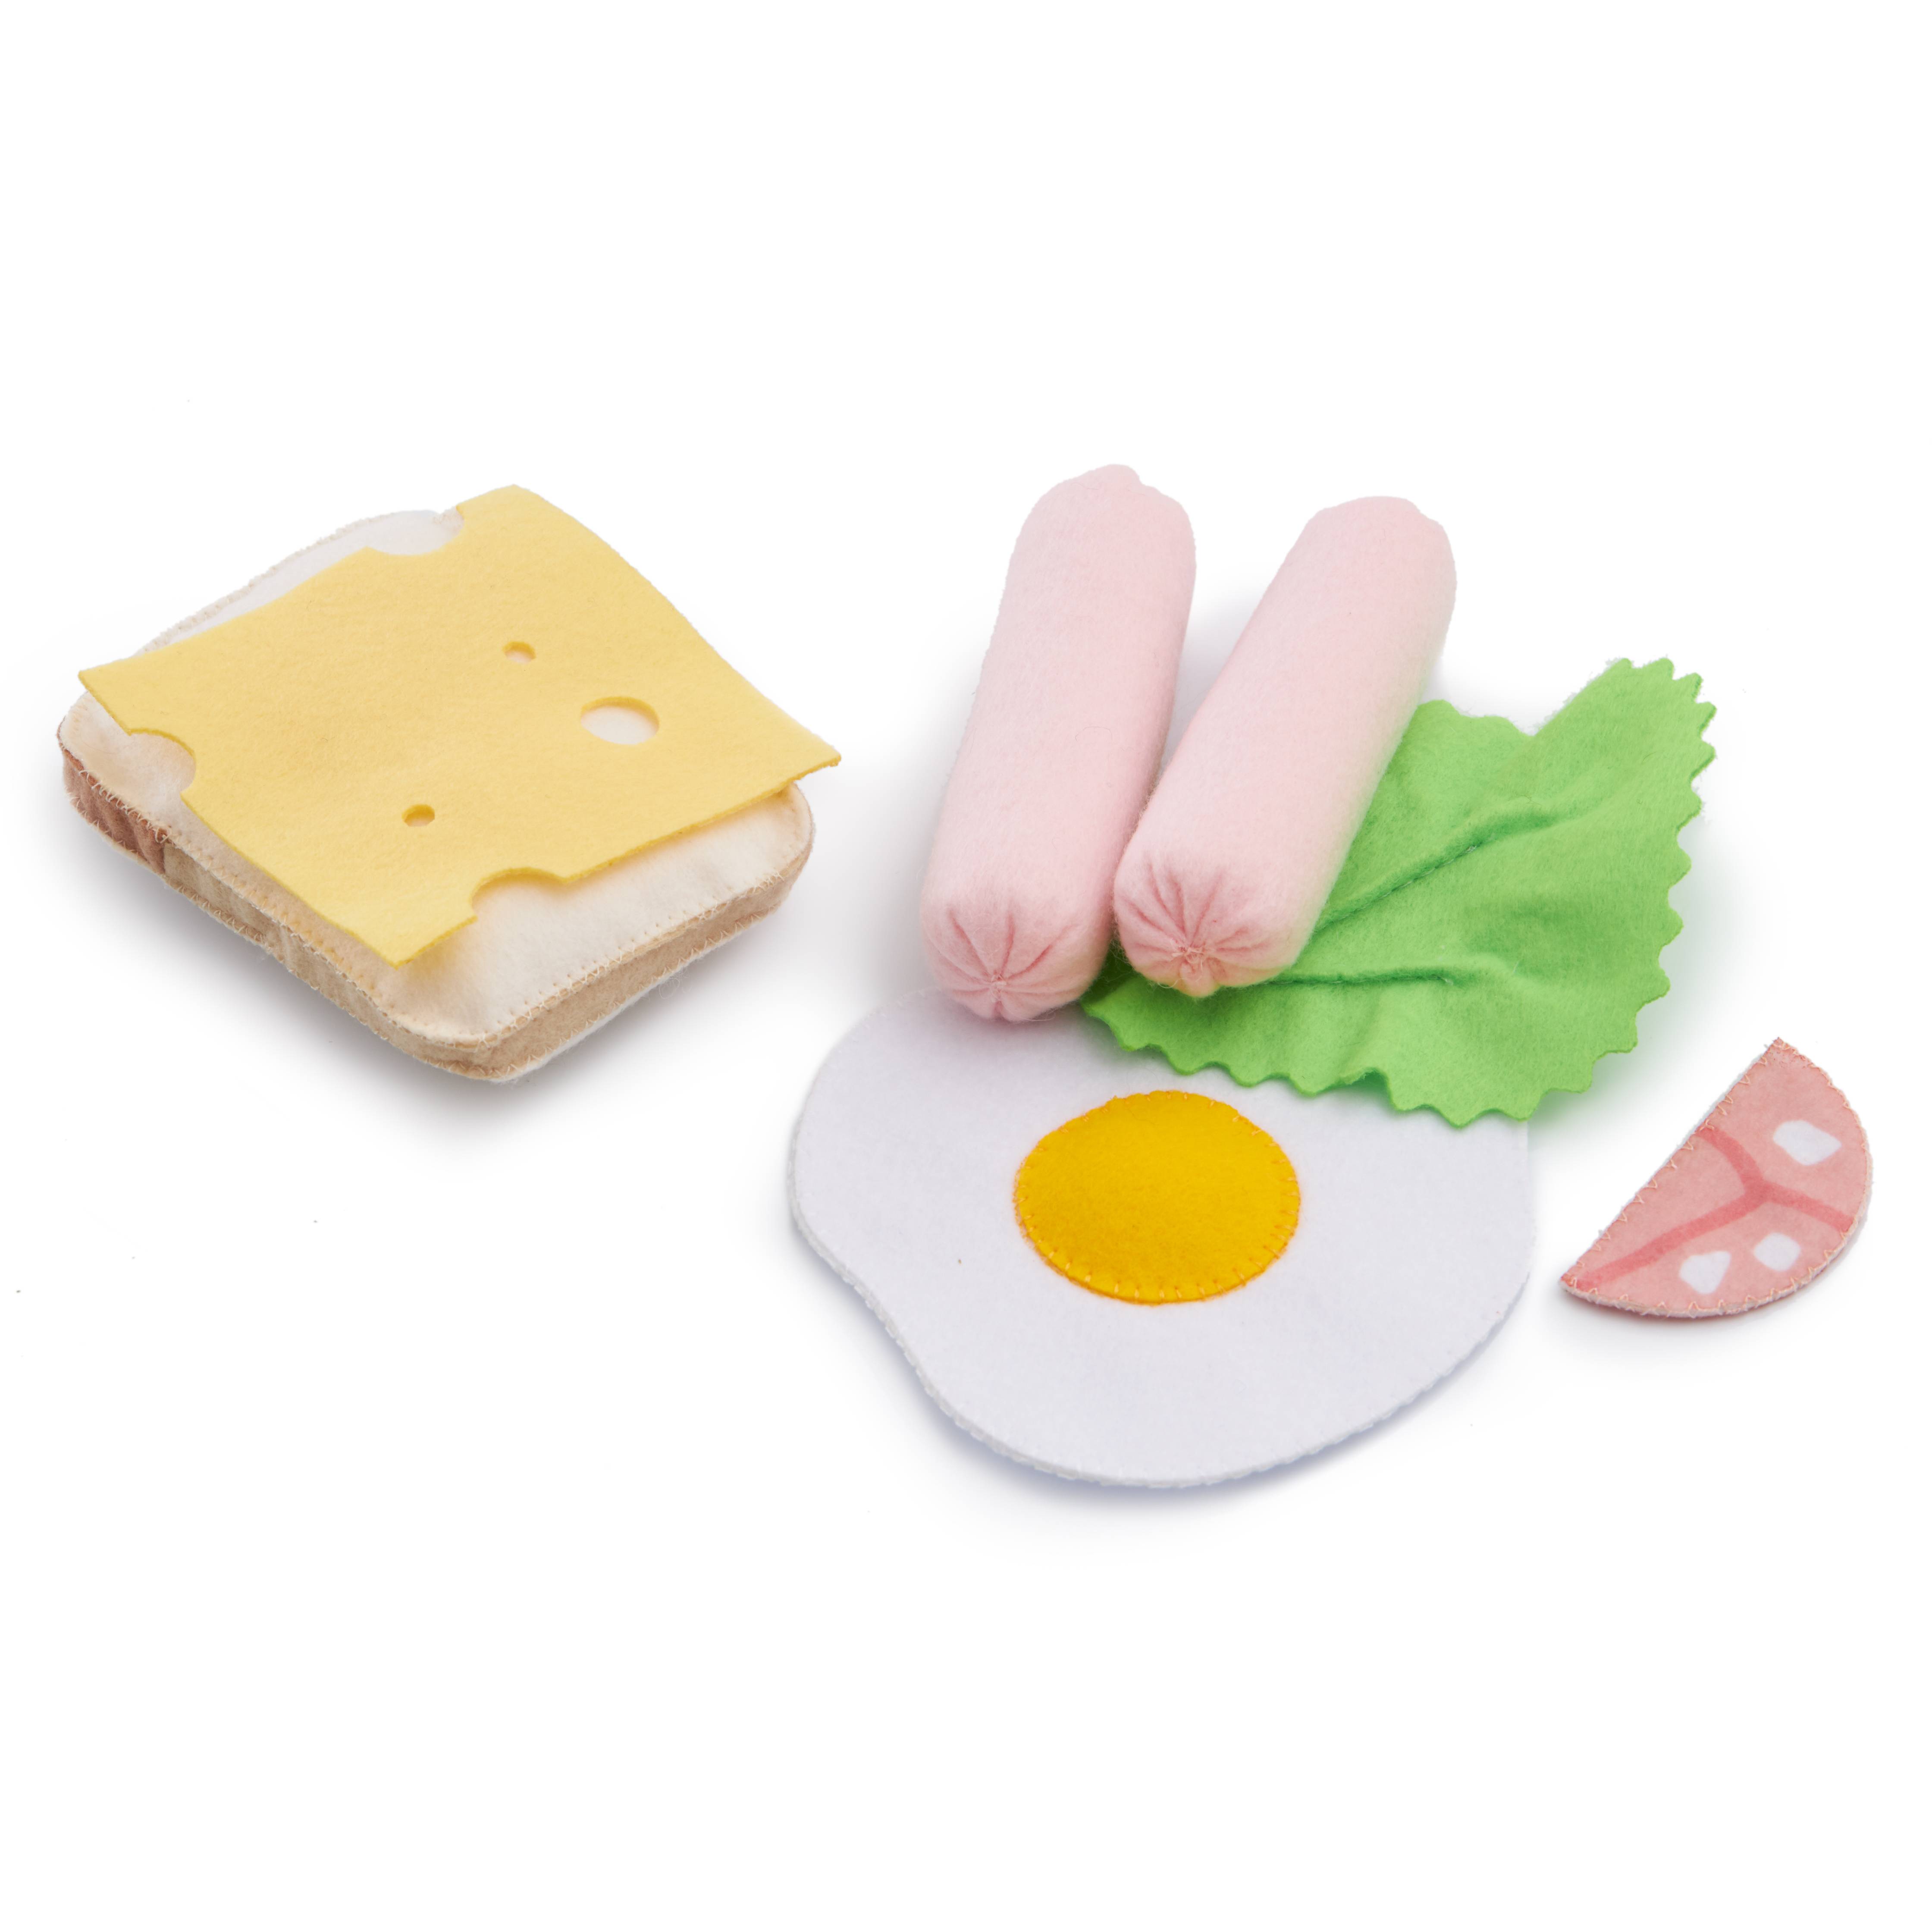 фото Foodboxtoys игровой набор продуктов из фетра завтрак